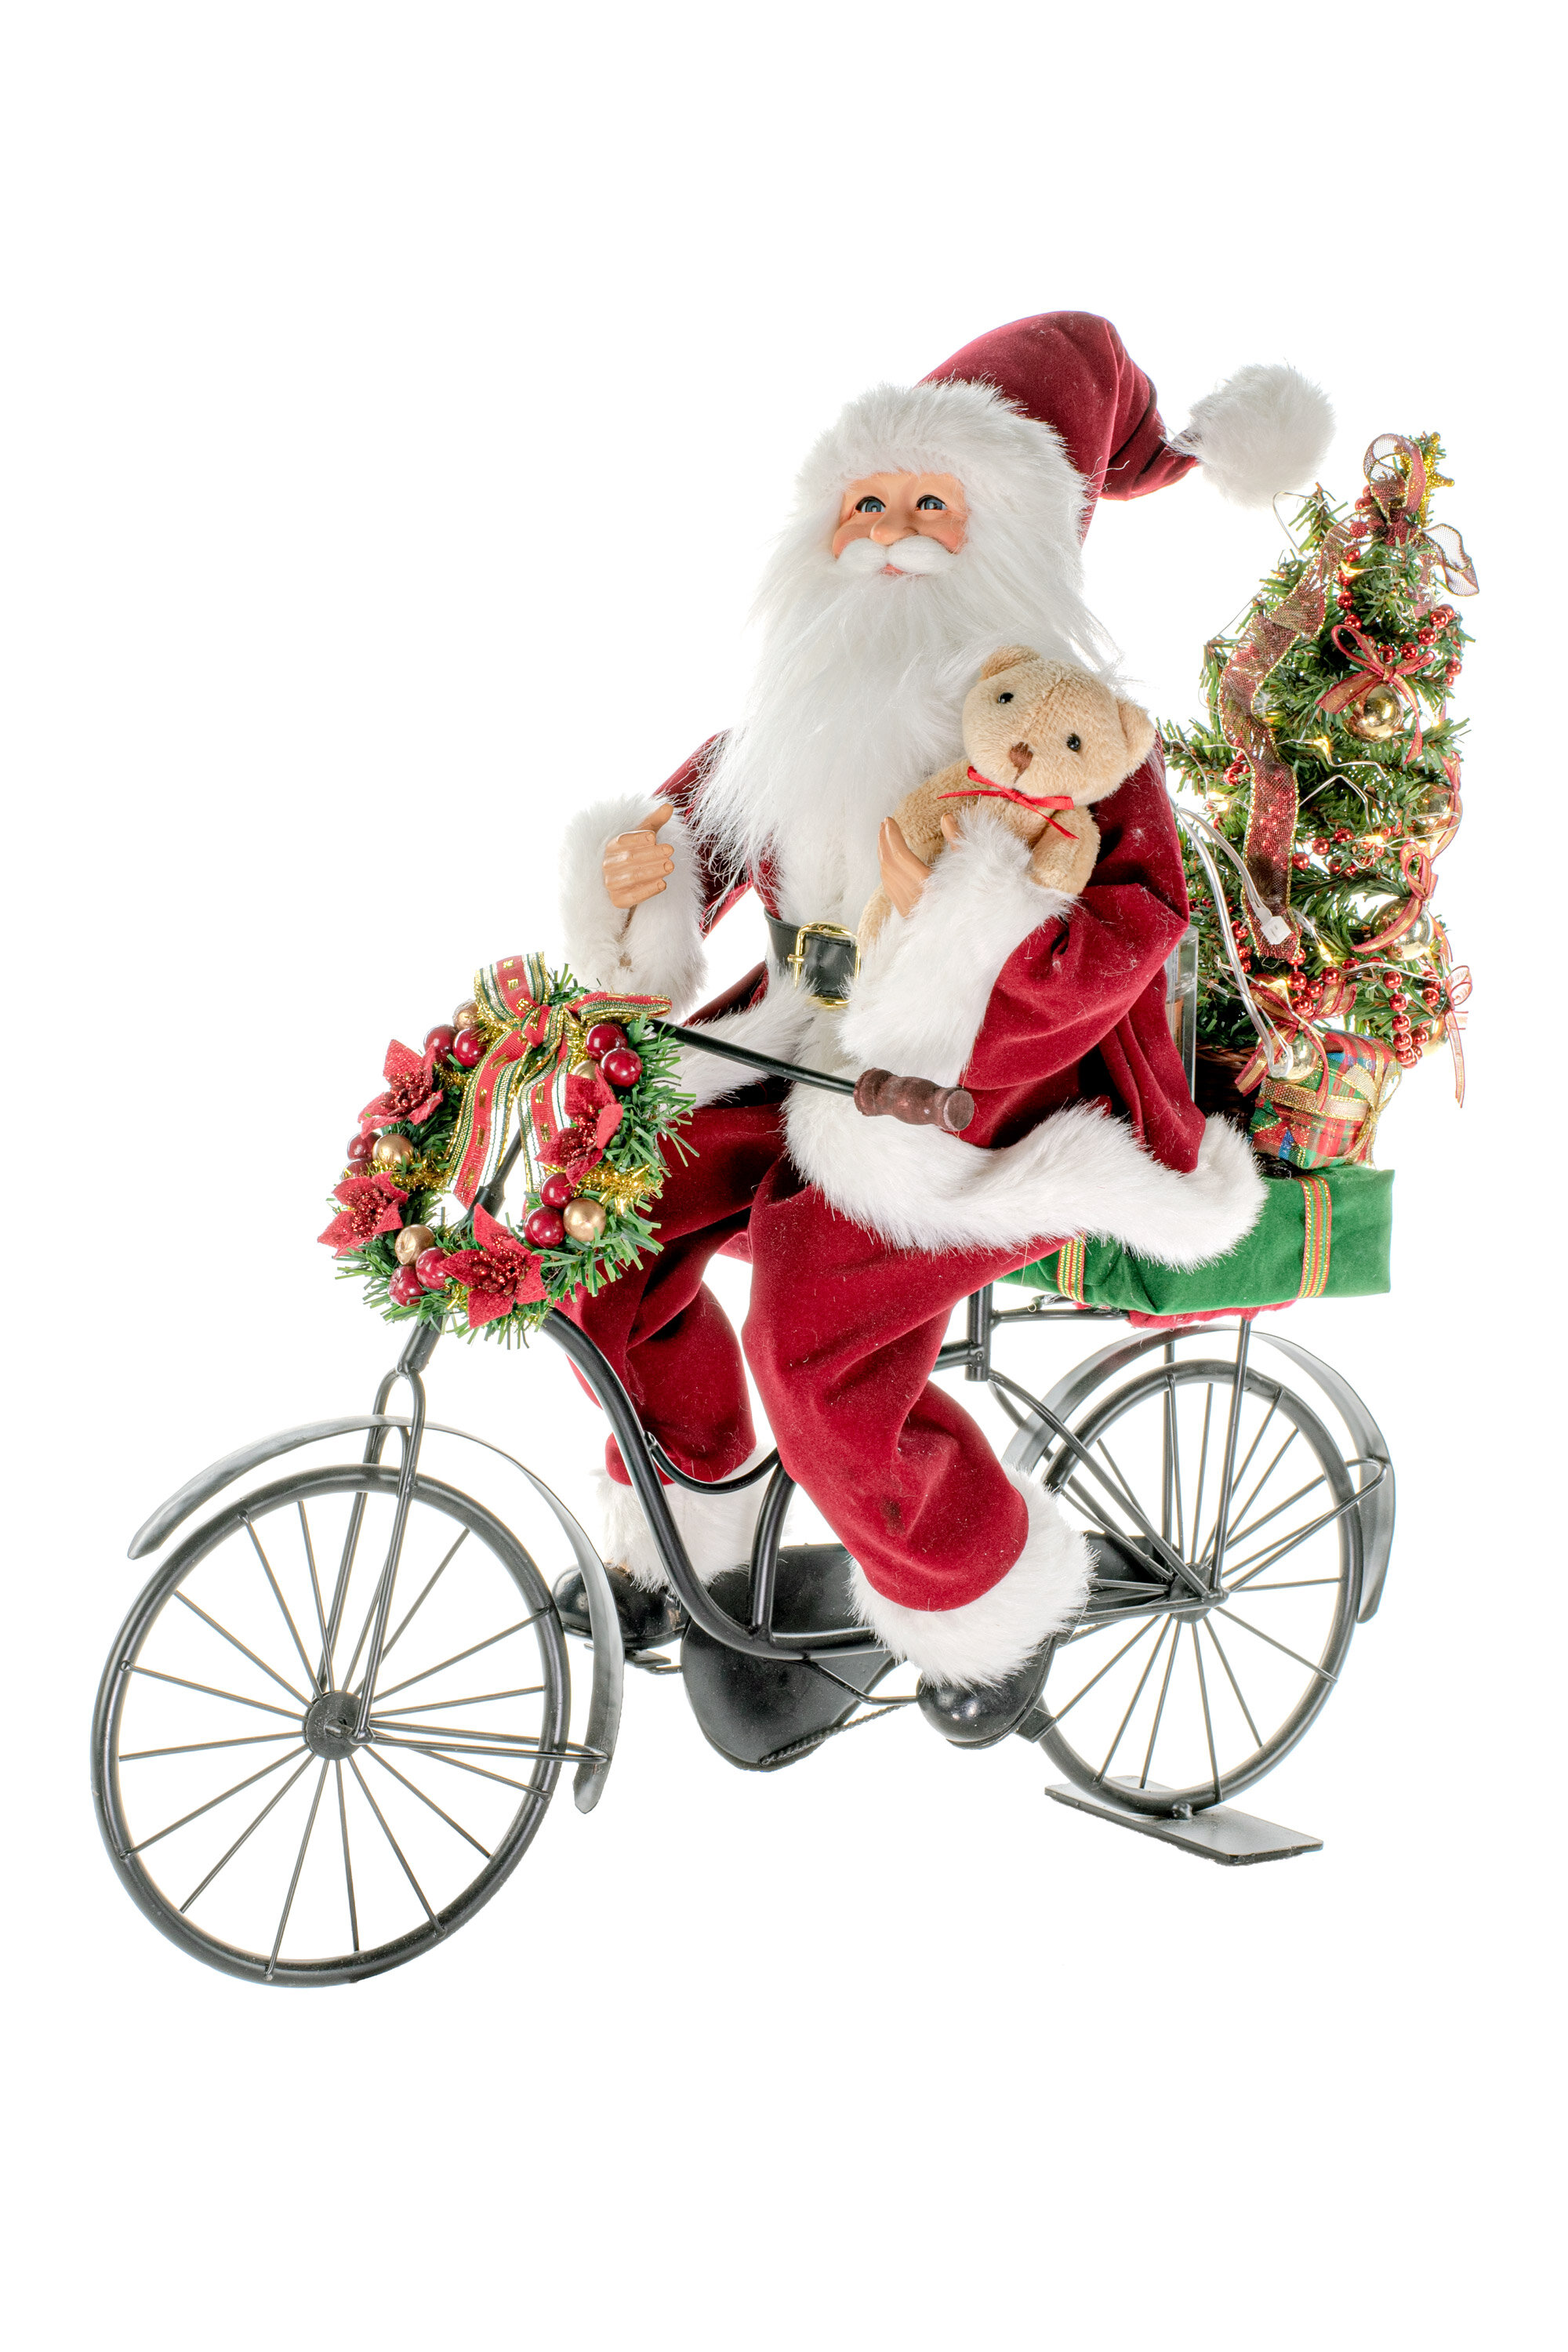 santa riding a bike